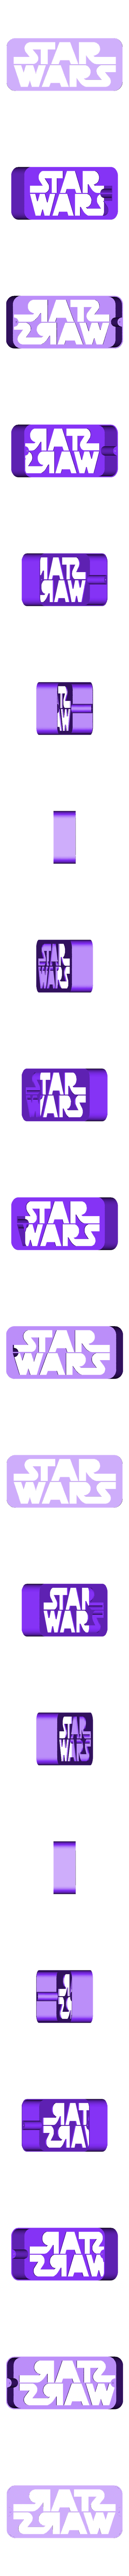 case.stl Télécharger fichier STL gratuit Lampe avec logo STAR WARS • Plan imprimable en 3D, LowRob